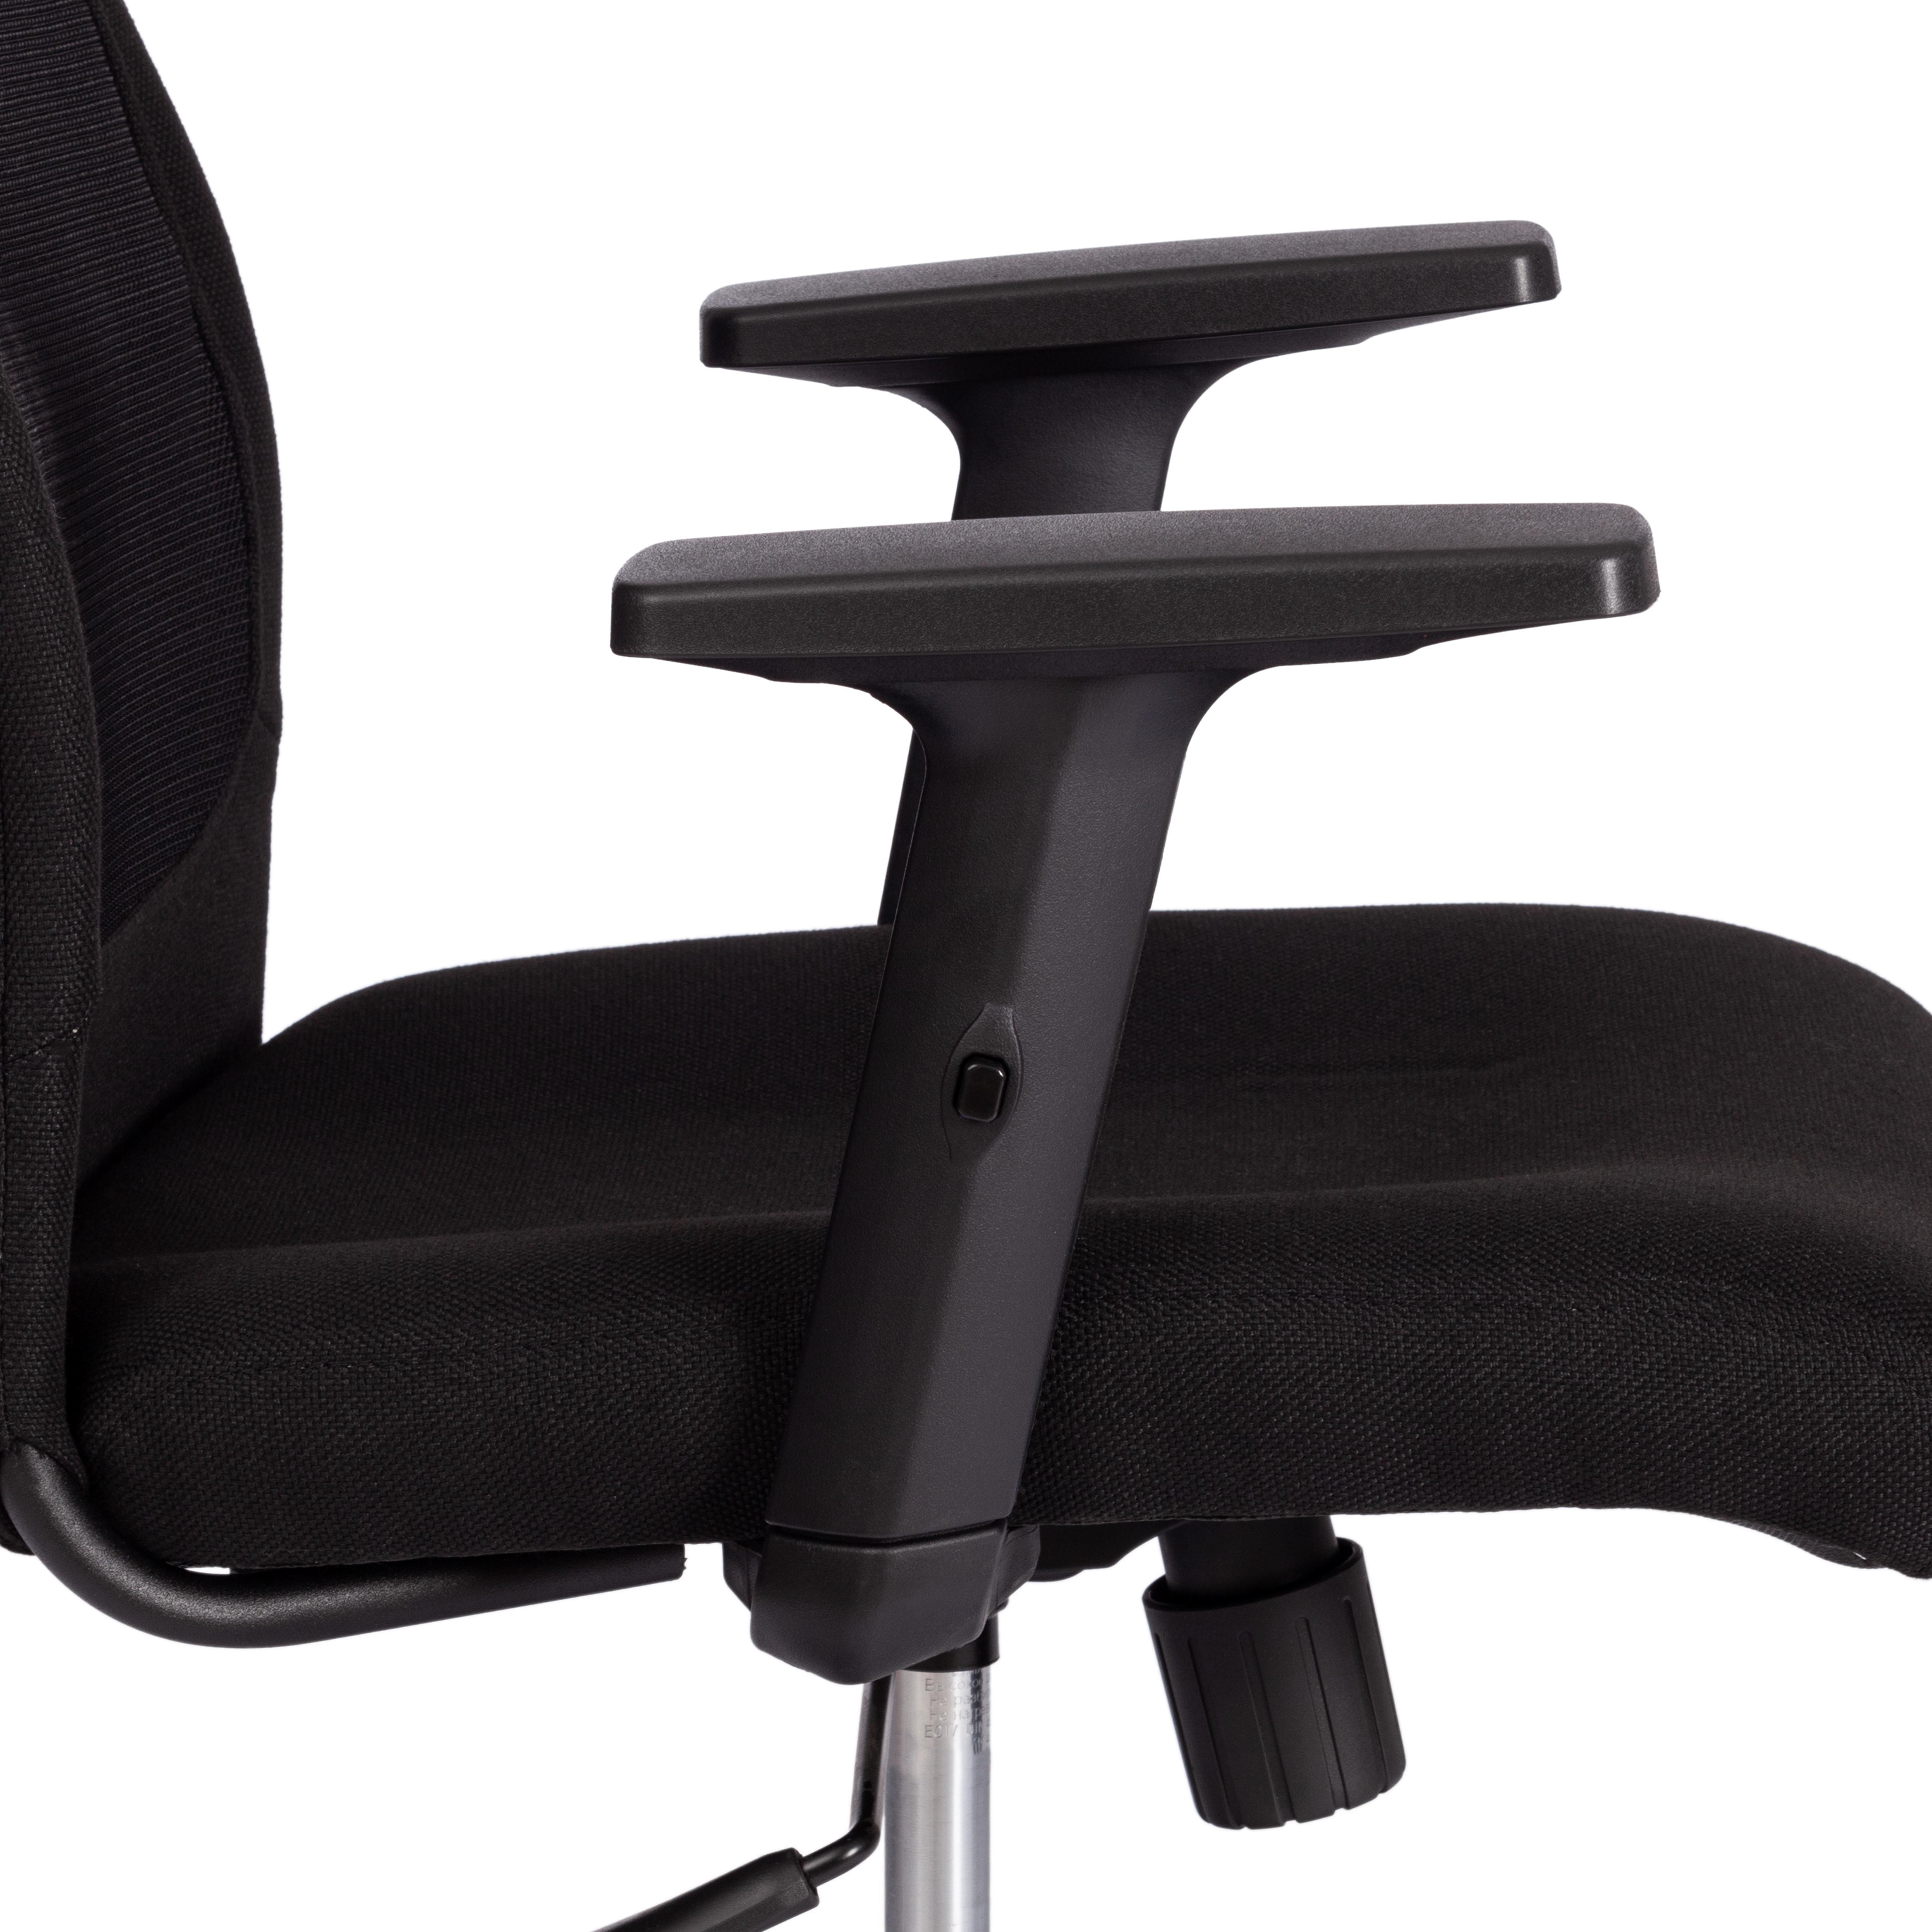 Кресло PROFIT PLT ткань, черный, 2603/W-11